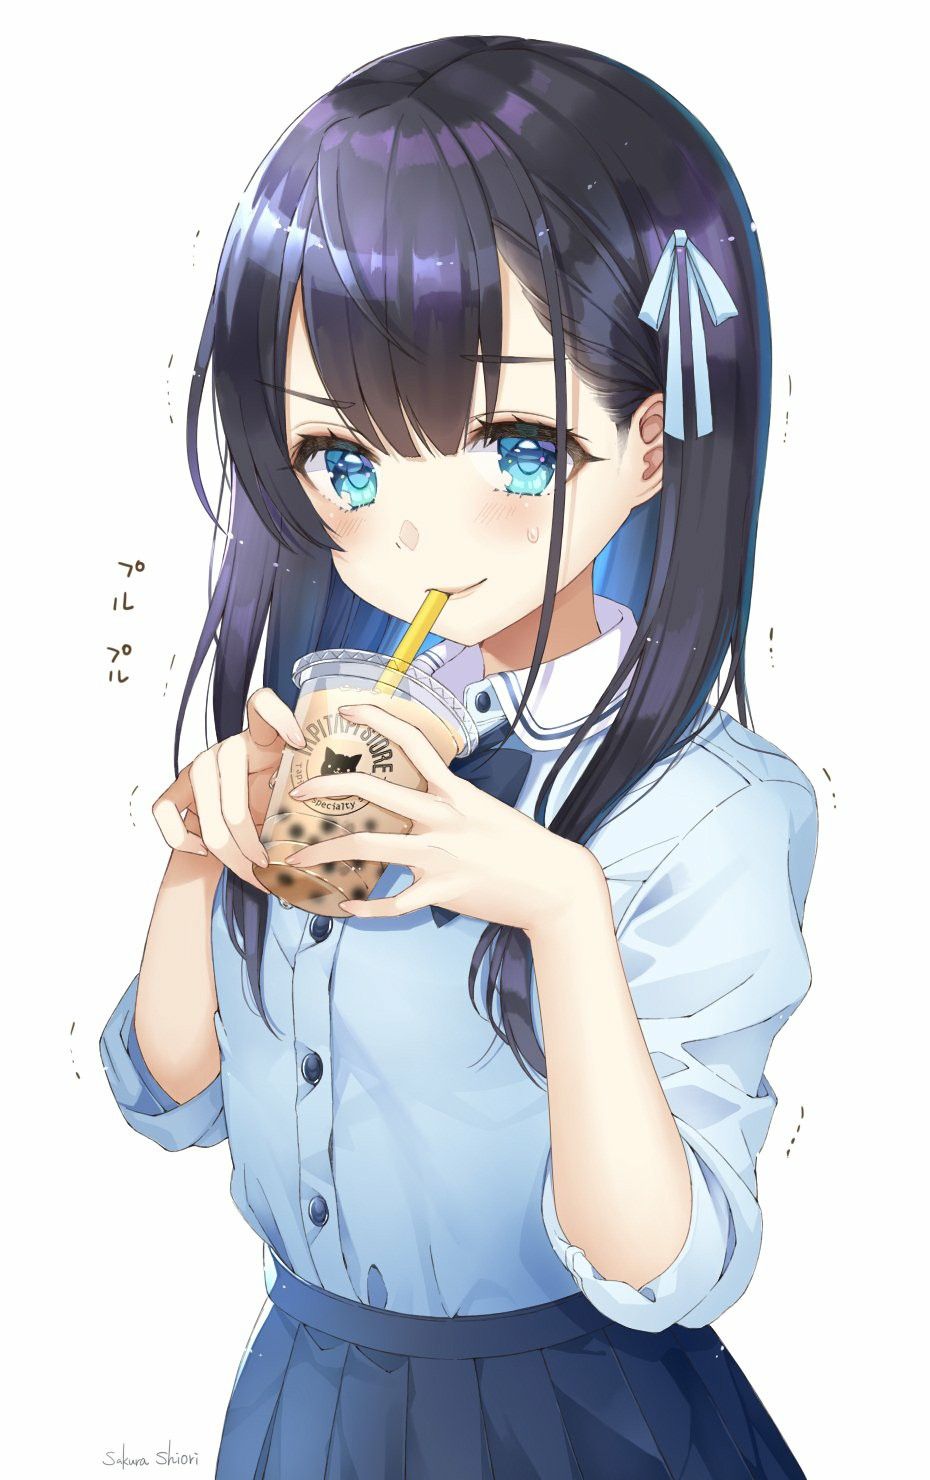 Được trổ tài với chiếc cốc trà sữa thơm ngon trong tay, một nhân vật anime đáng yêu sẽ mang đến cho bạn cảm giác tuyệt vời. Cùng xem nhân vật này thưởng thức món trà sữa mát lạnh trong không khí ấm áp của quán trà sữa.